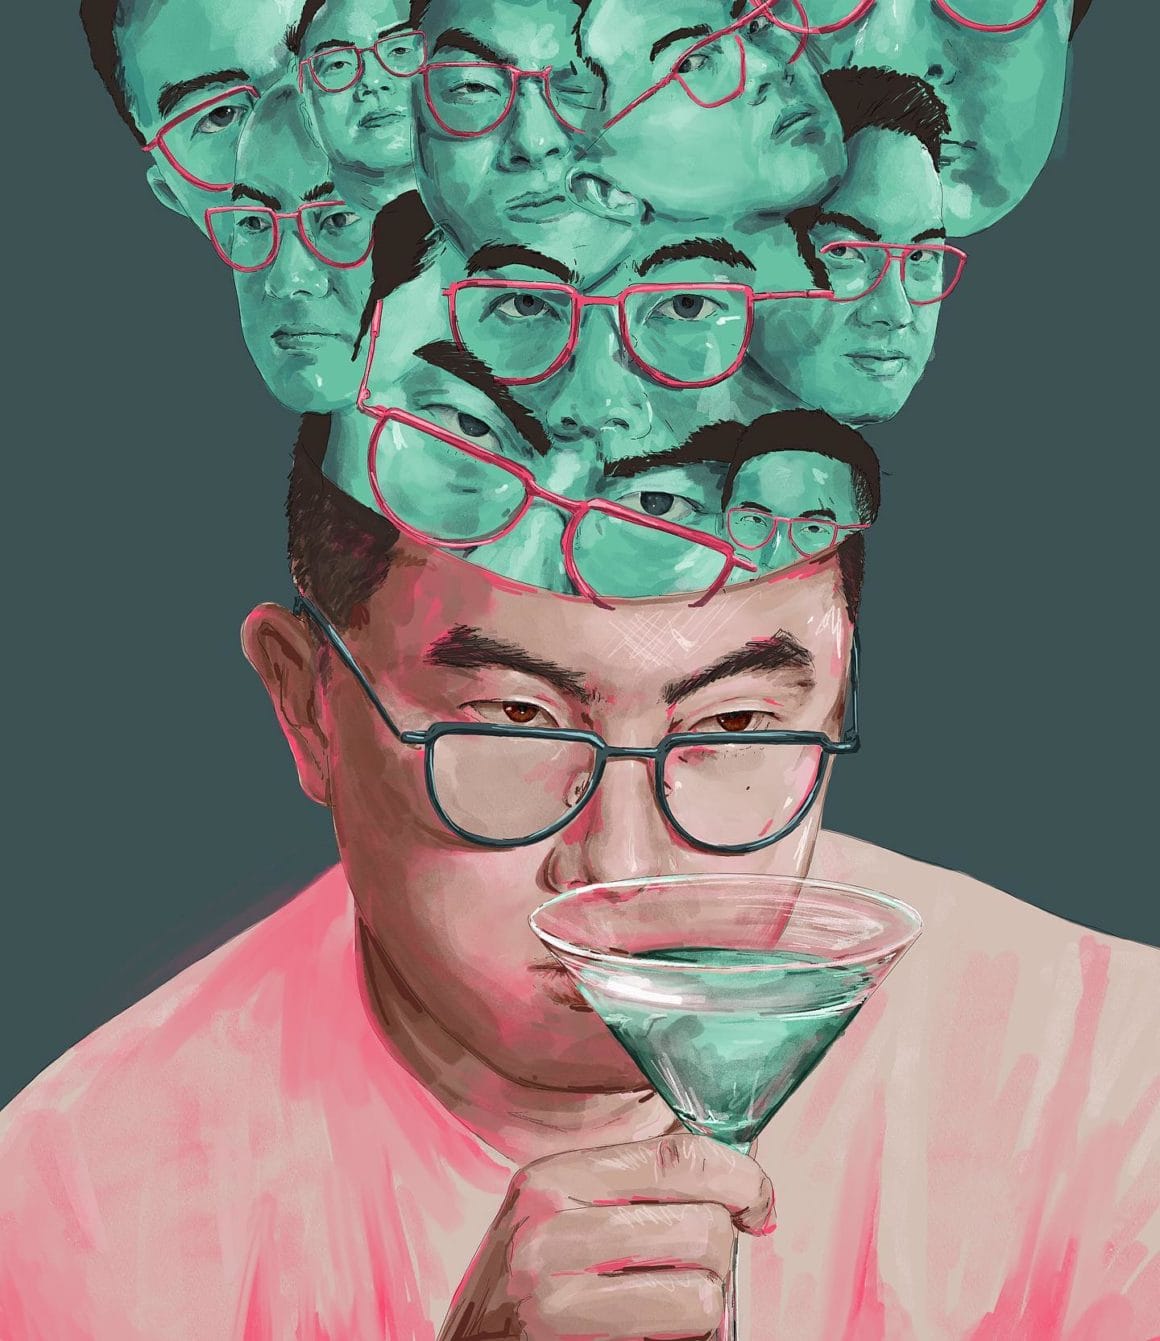 Un homme asiatique boit un cocktail, sort de son crâne des dizaines de visages identiques au sien